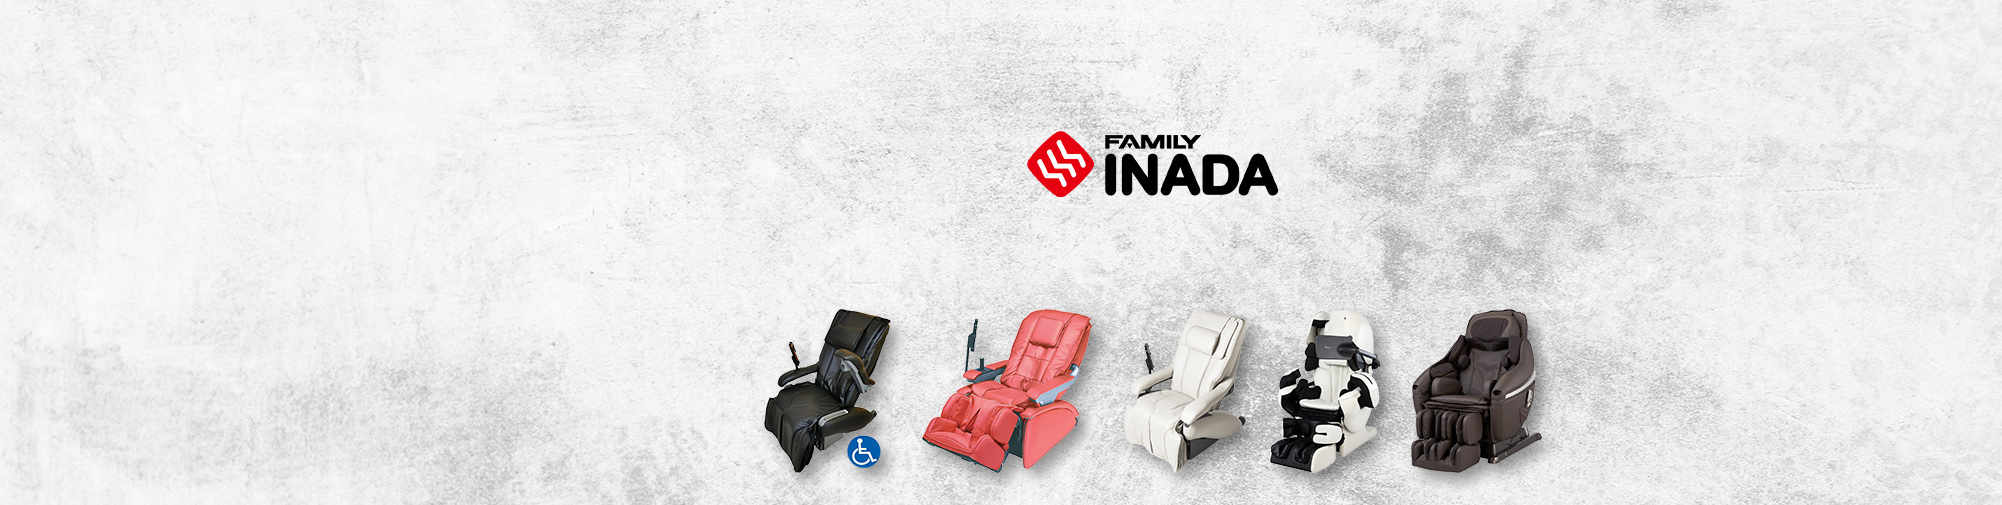 Obitelj Inada – tradicionalna japanska tvrtka | Svijet stolica za masažu